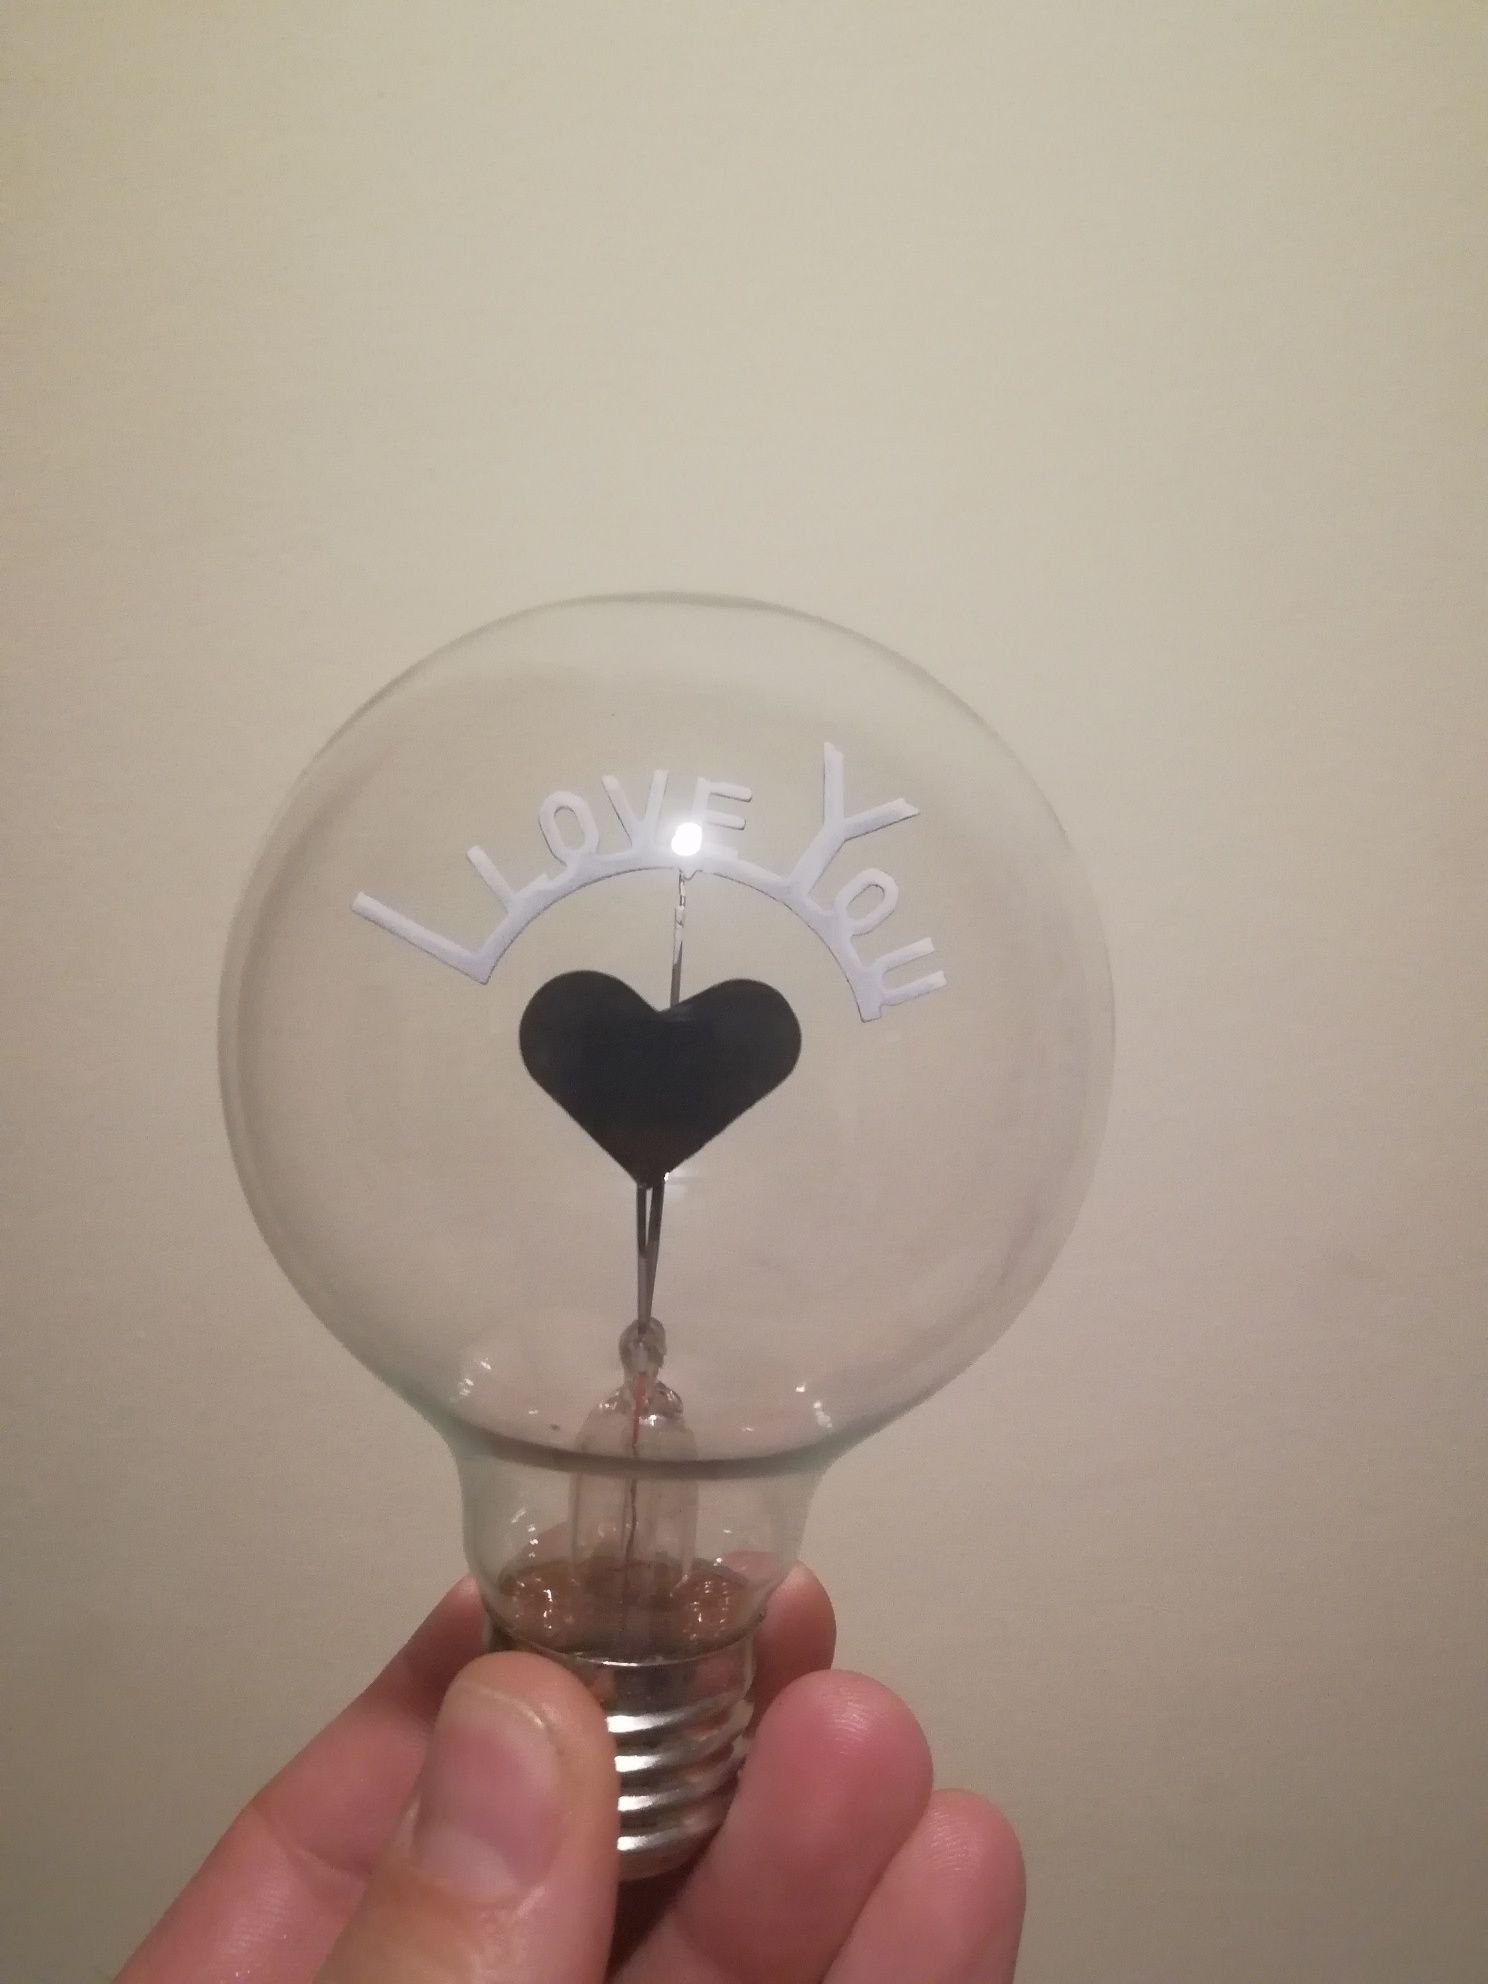 Лампочка I Love You, отличный сувенир или подарок